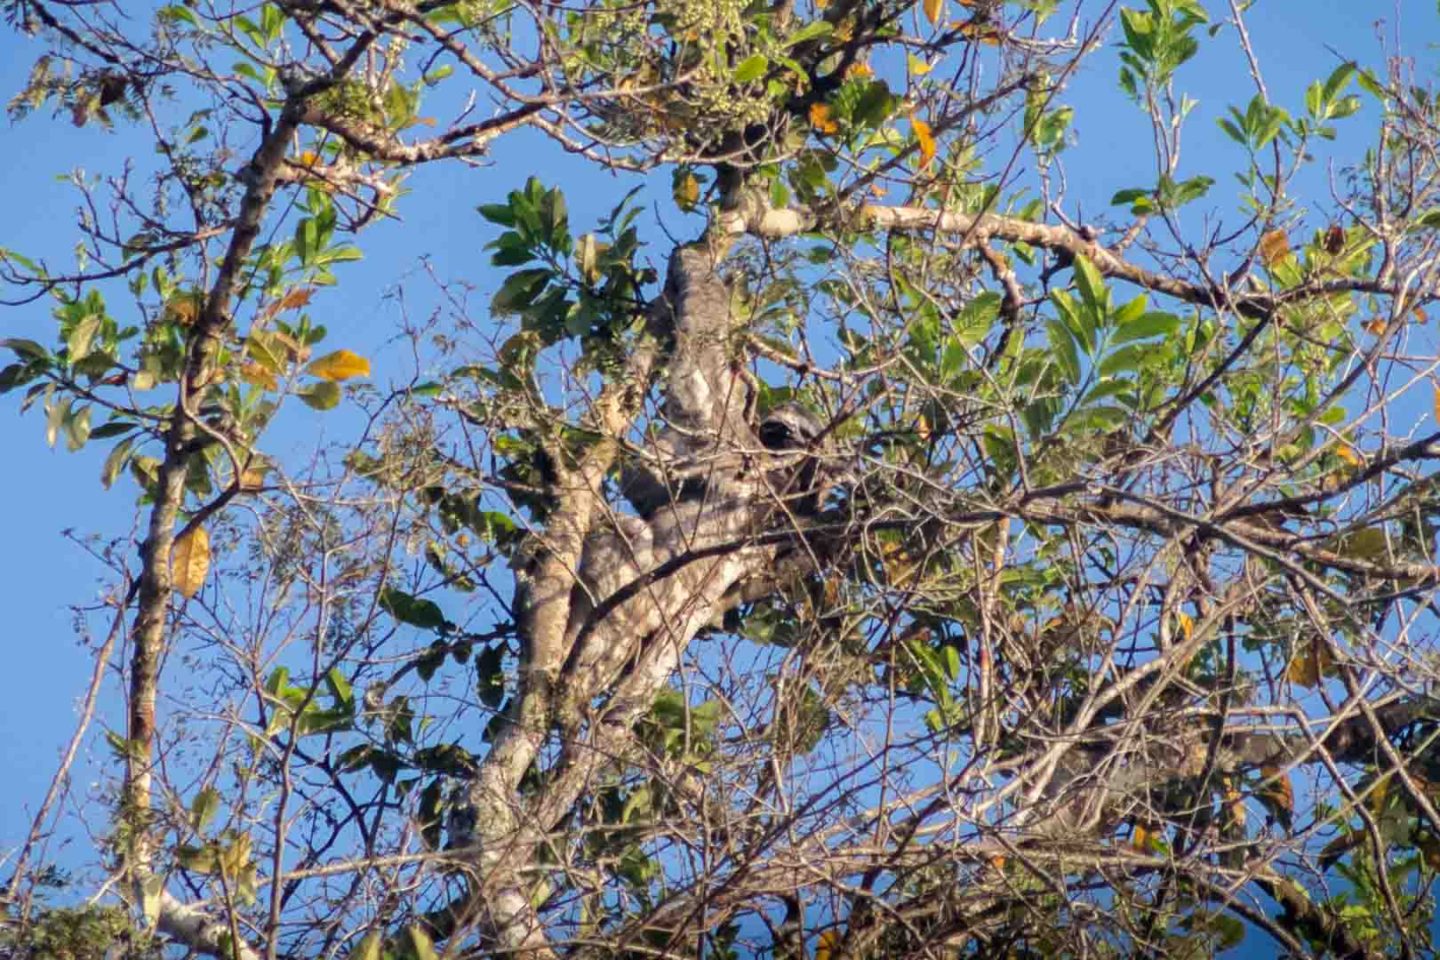 Sloth in a tree at Sandoval Lake